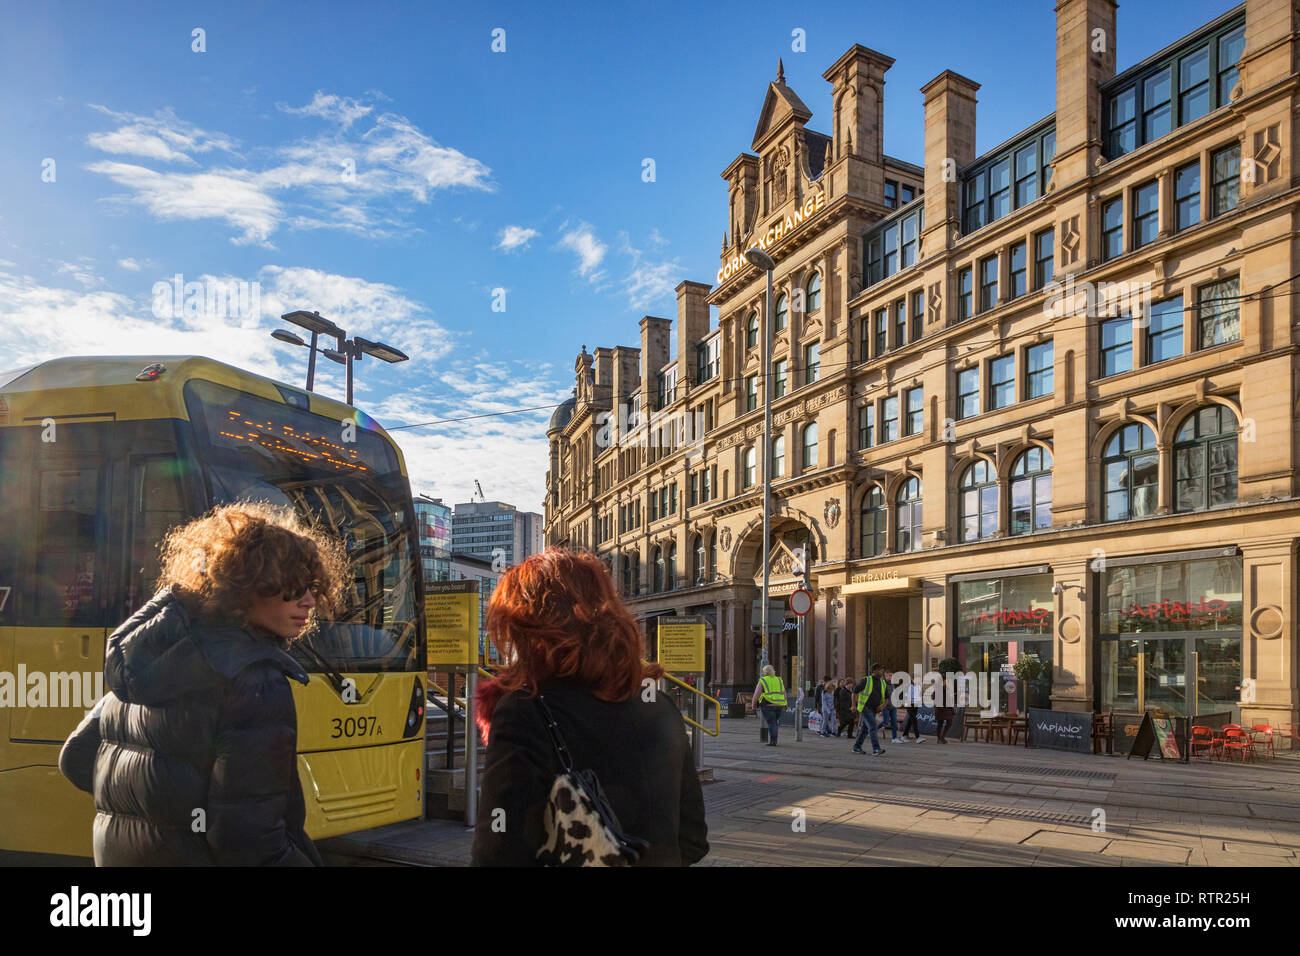 2. September 2018: Manchester, UK-Exchange Square, mit Corn Exchange Gebäude, Metrolink Tram, zwei junge Frauen mit Hintergrundbeleuchtung, Haar, und der Spiegelungen an. Stockfoto